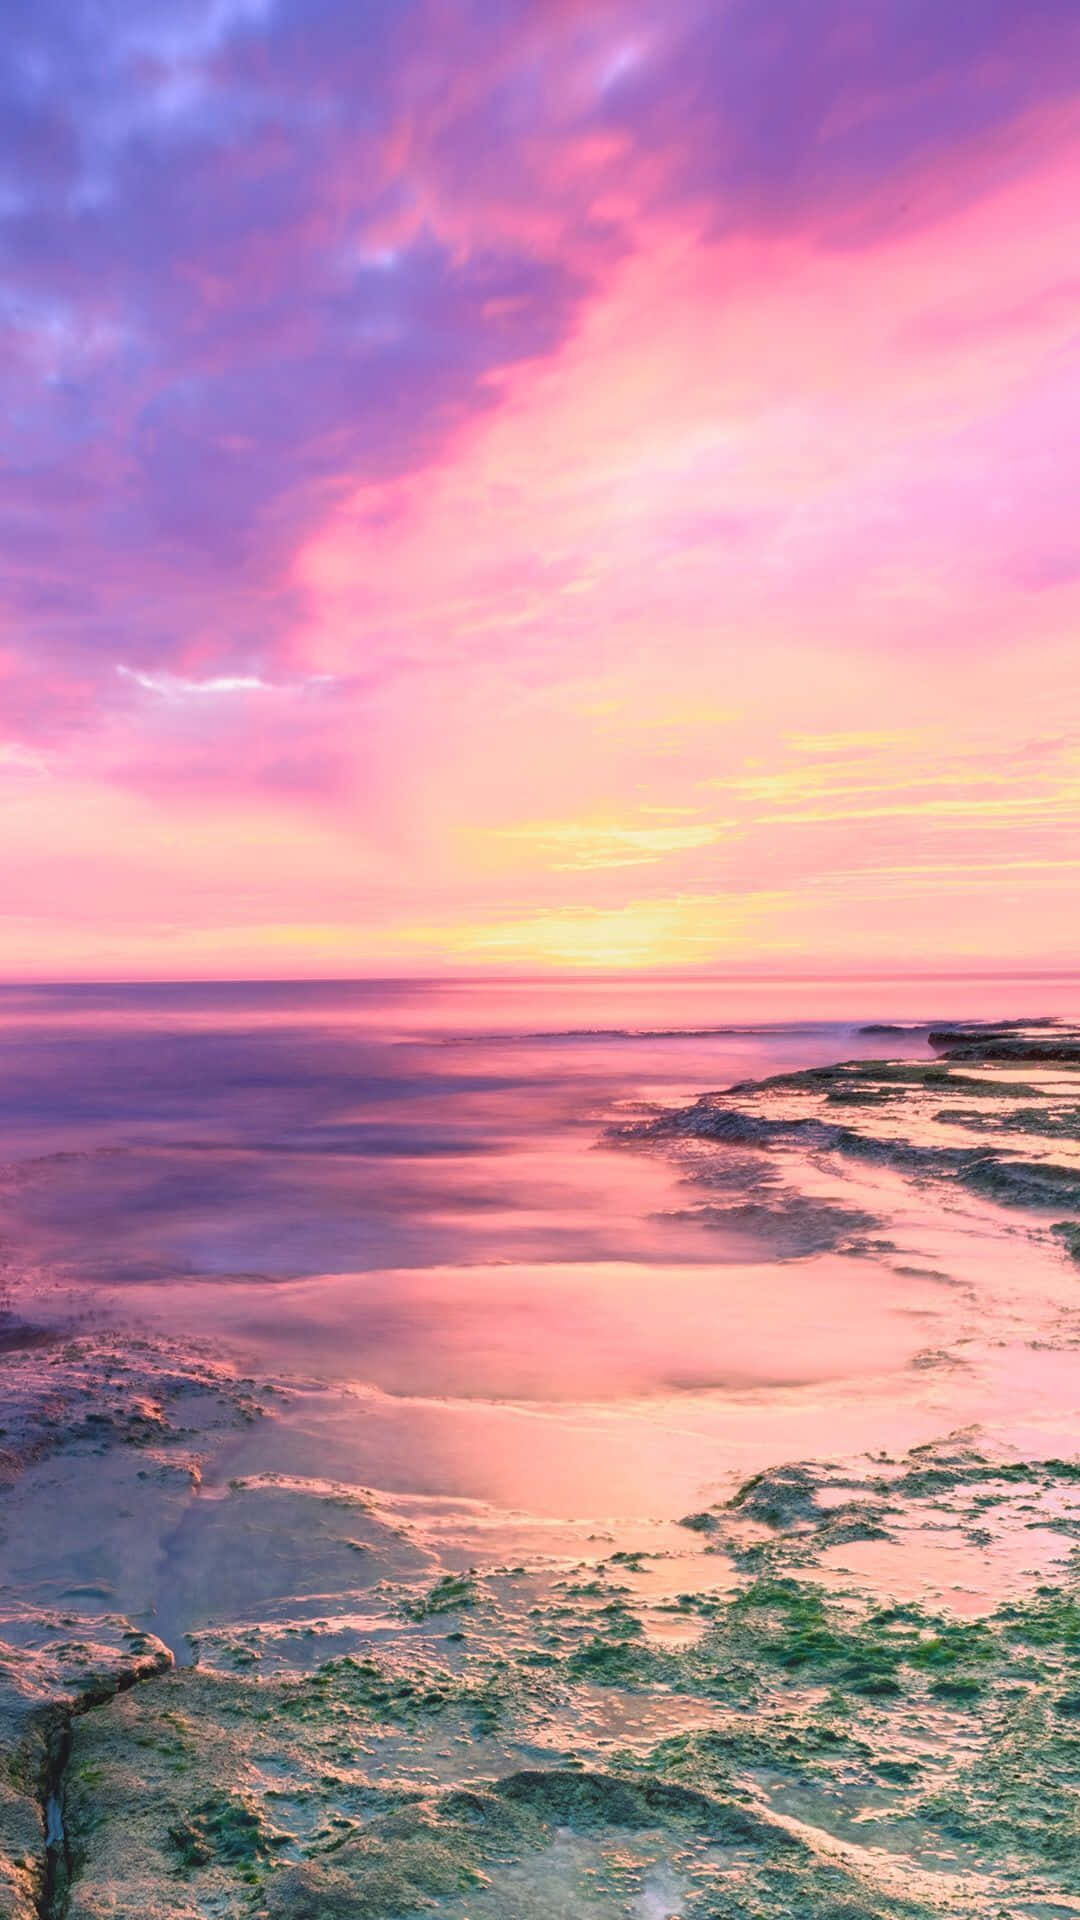 “Enjoy a Stunning Sunset at Pink Beach” Wallpaper